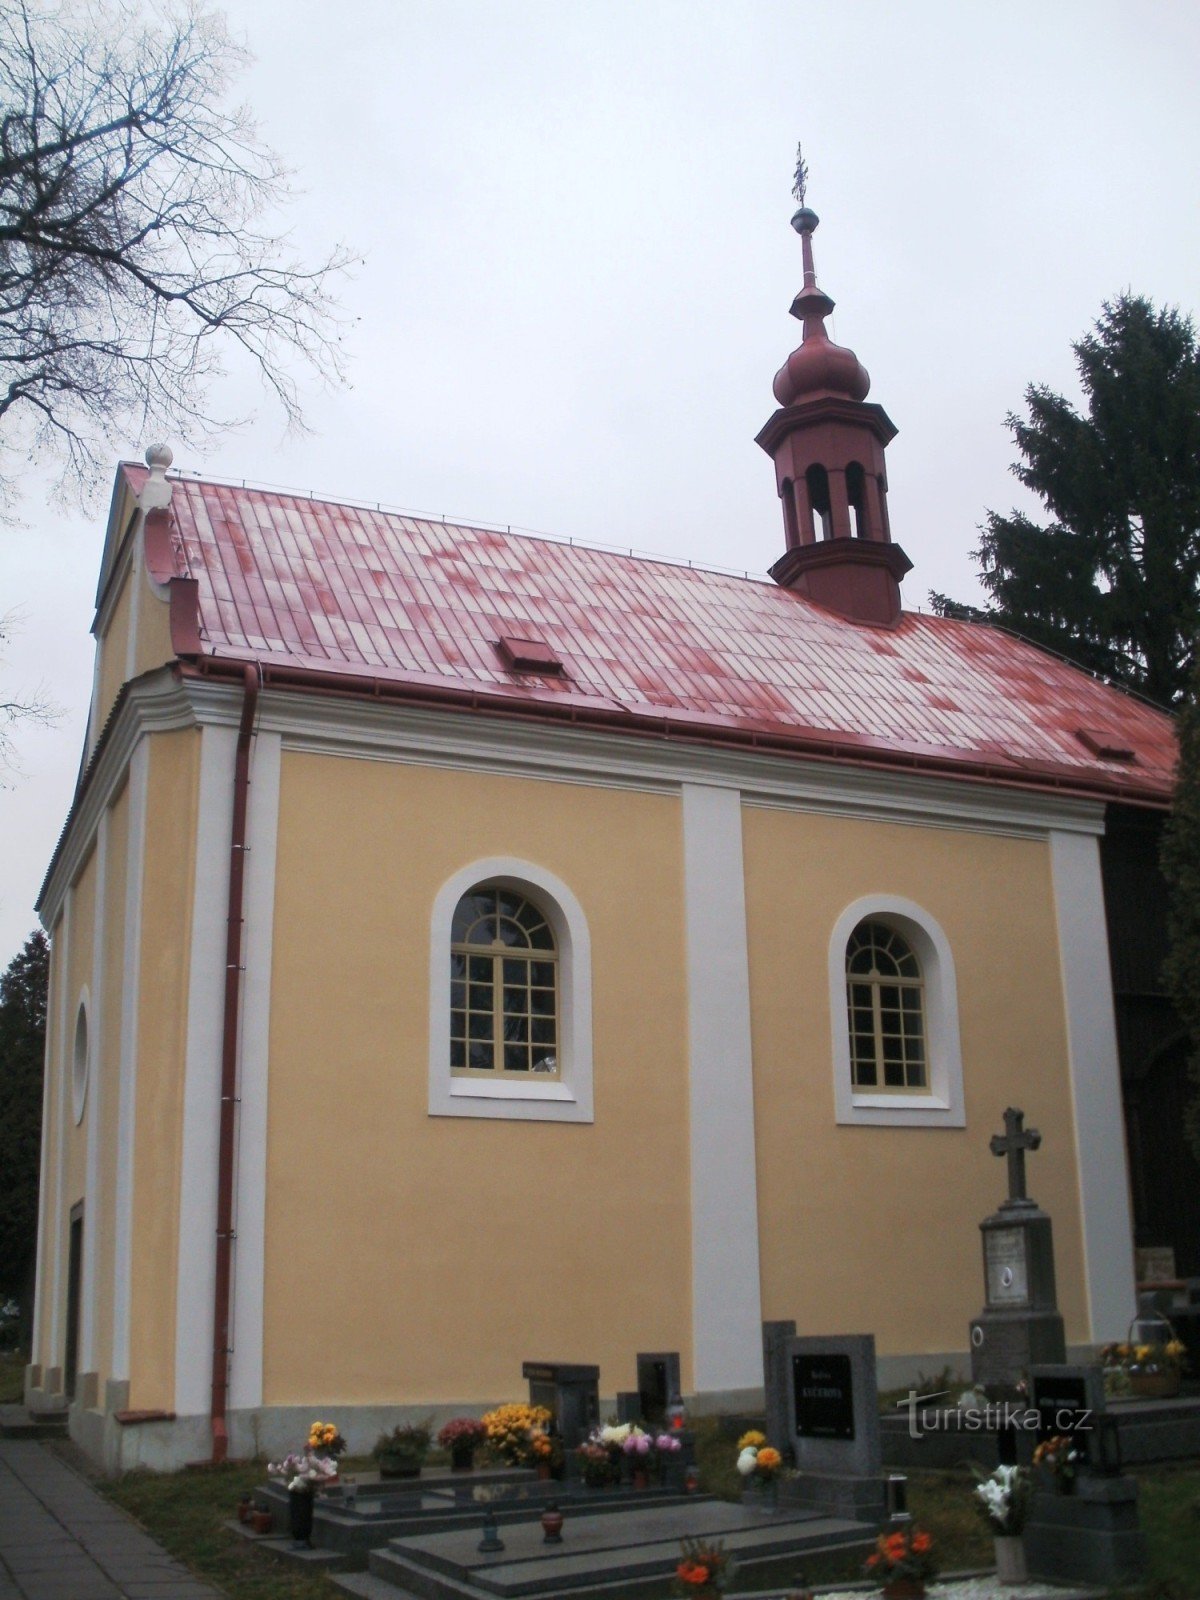 Týnec nad Labem - Nhà thờ Đức Mẹ Sầu Bi